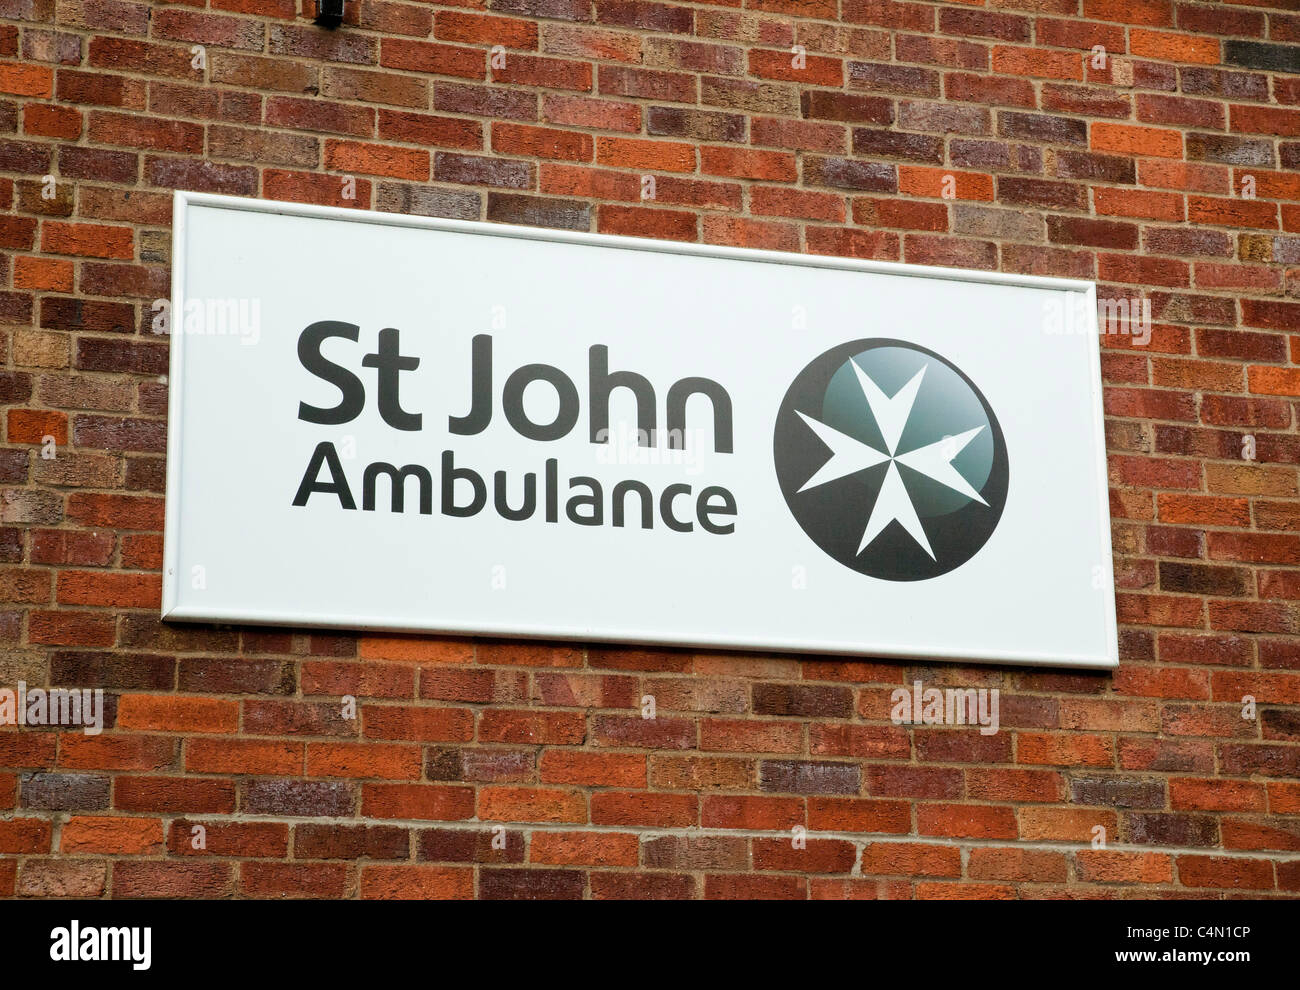 St John Ambulance sign in FR Banque D'Images